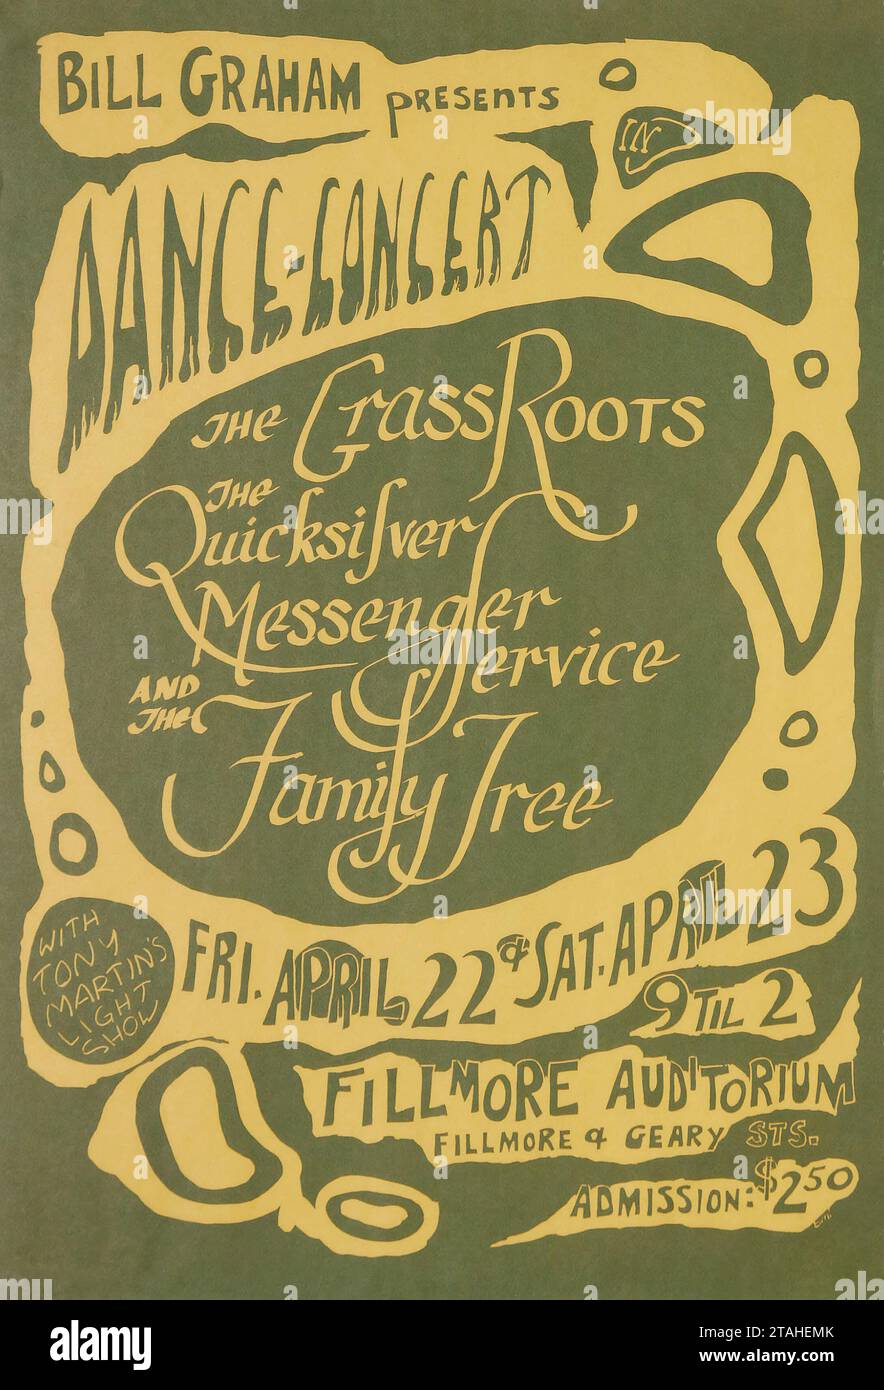 Danse-concert - Grassroots - Quicksilver Messenger Service - arbre généalogique - affiche de concert Fillmore (Bill Graham Presents, 1966). Une des premières affiches de Bill Graham. Banque D'Images